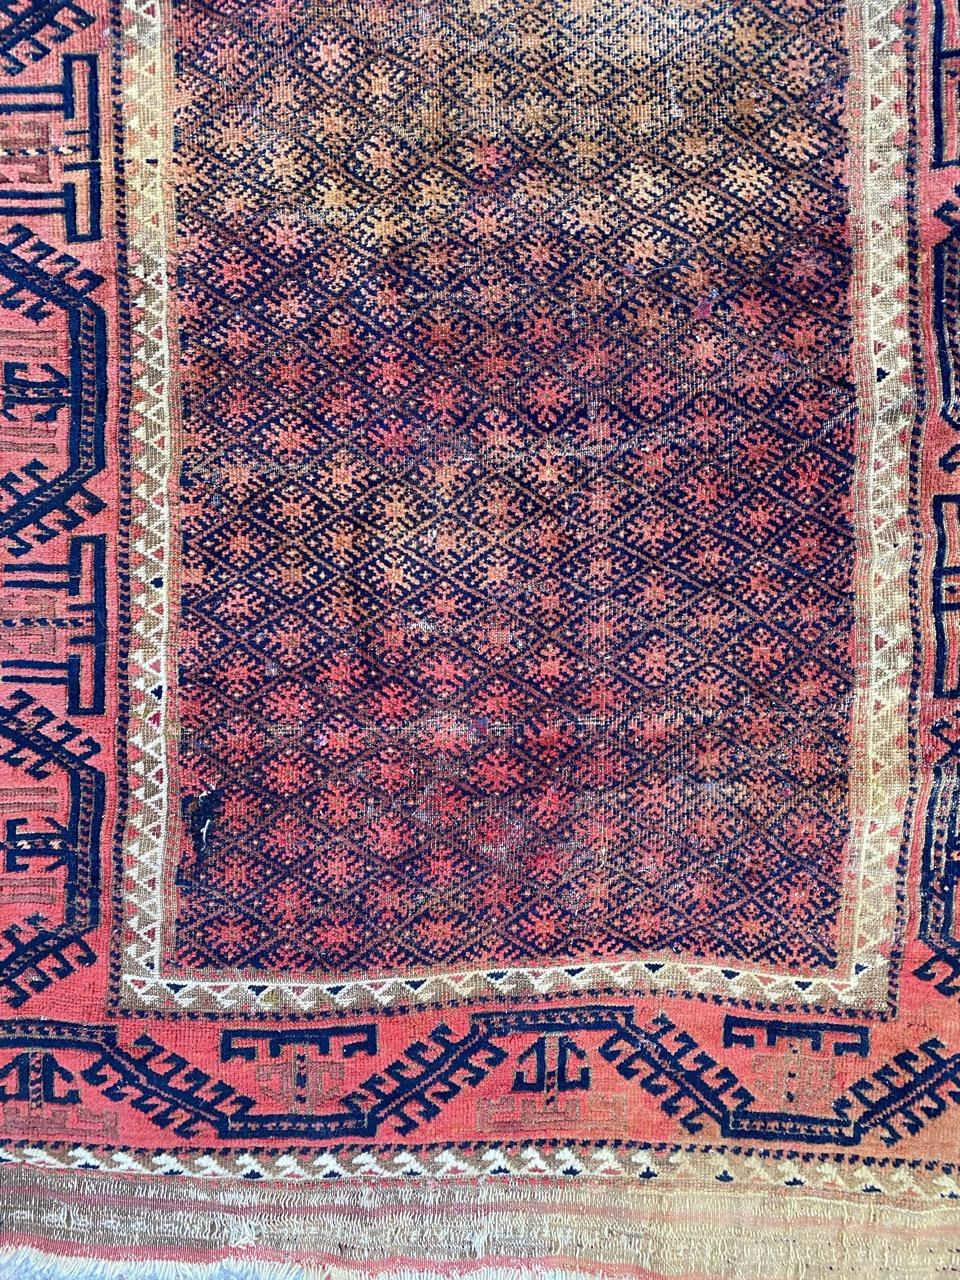 Beau tapis Baluch de la fin du 19ème siècle avec un design tribal et géométrique et de belles couleurs naturelles, entièrement noué à la main avec du velours de laine sur une base de laine.